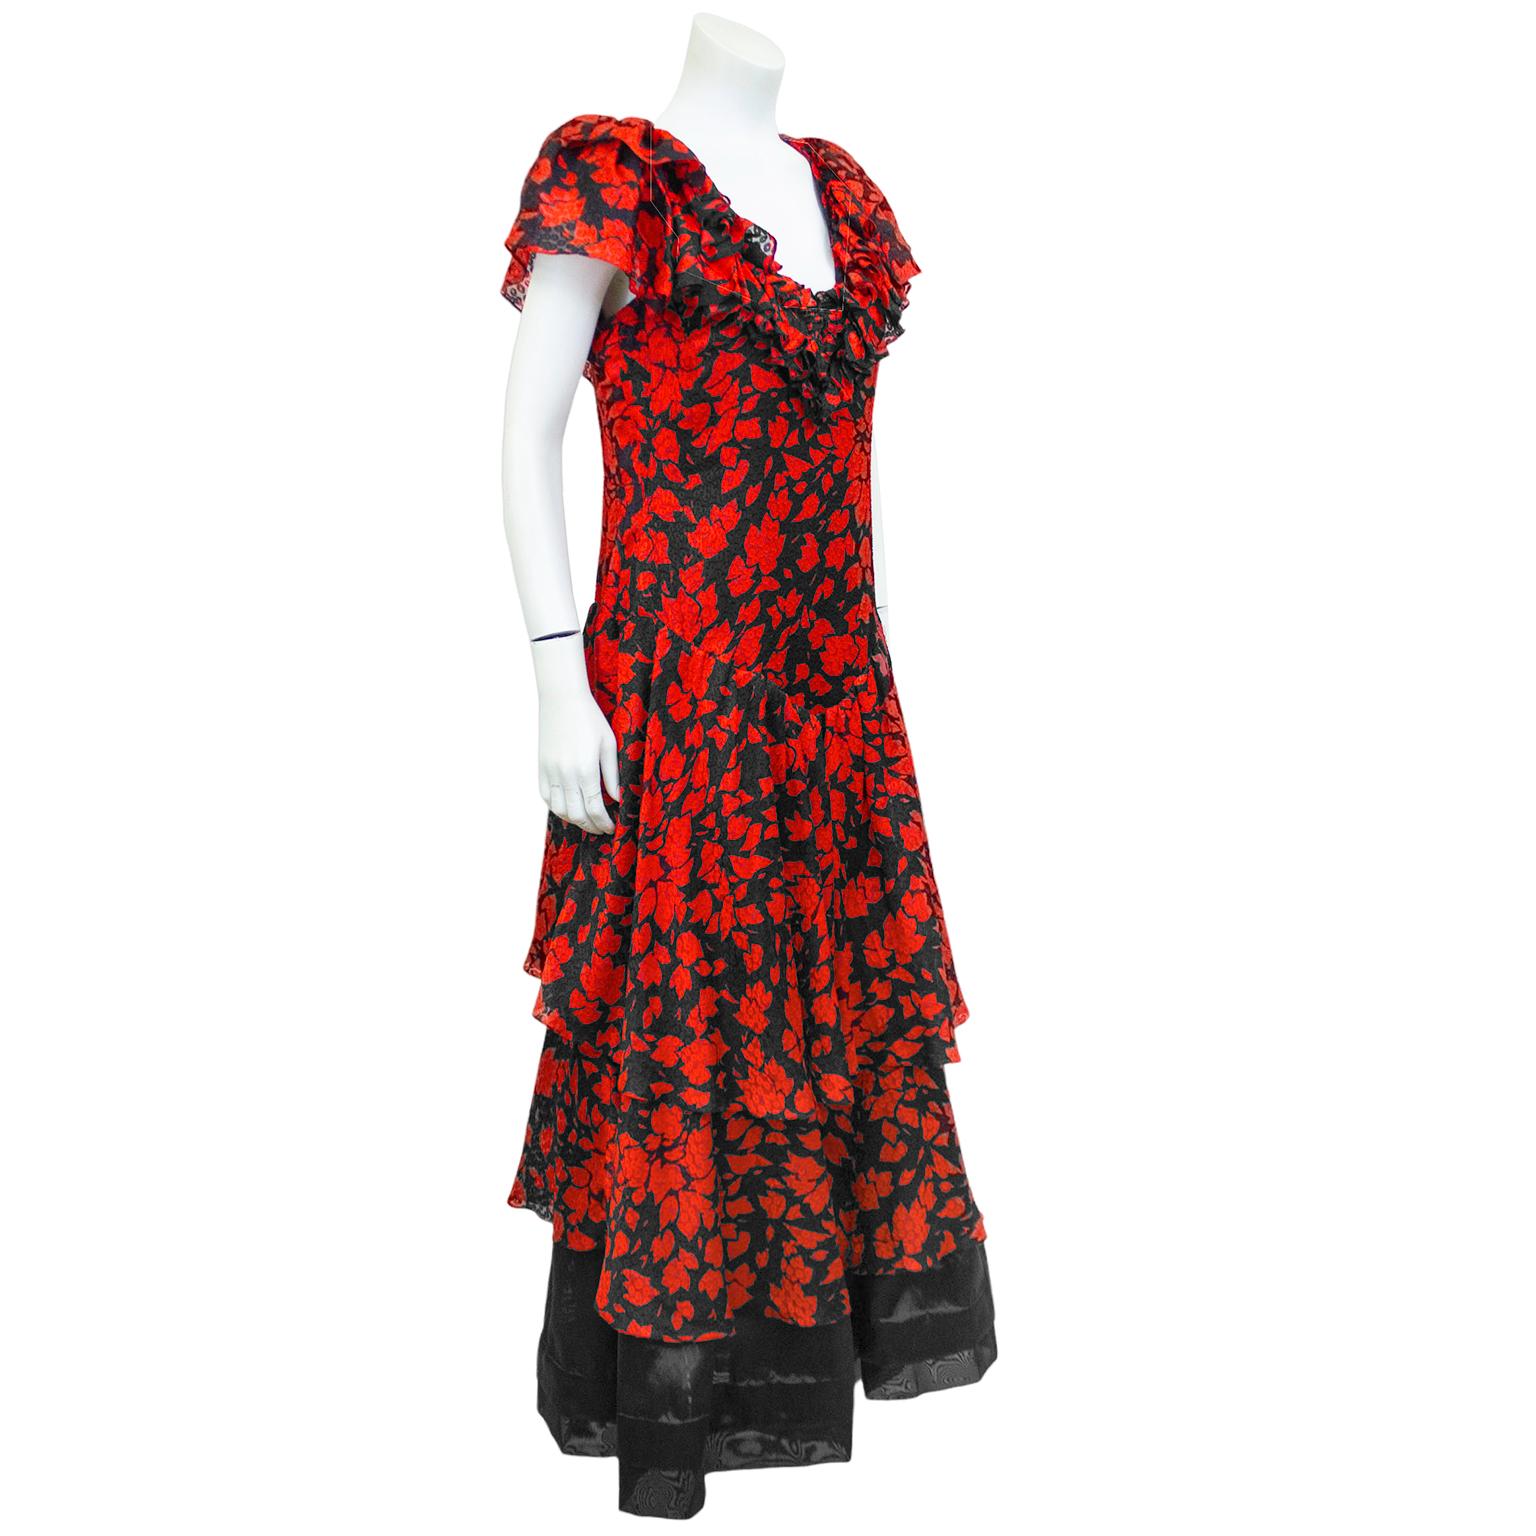 Romantisches Kleid aus Seidenjacquard mit rotem und schwarzem Blattdruck aus den 1970er Jahren. Mit Rüsche an der Brust, kurzen, romantischen Ärmeln, Bindeband im Nacken, leicht fallender Taille und gestuftem Rock. Schwarzer Unterrock zeigt sich am